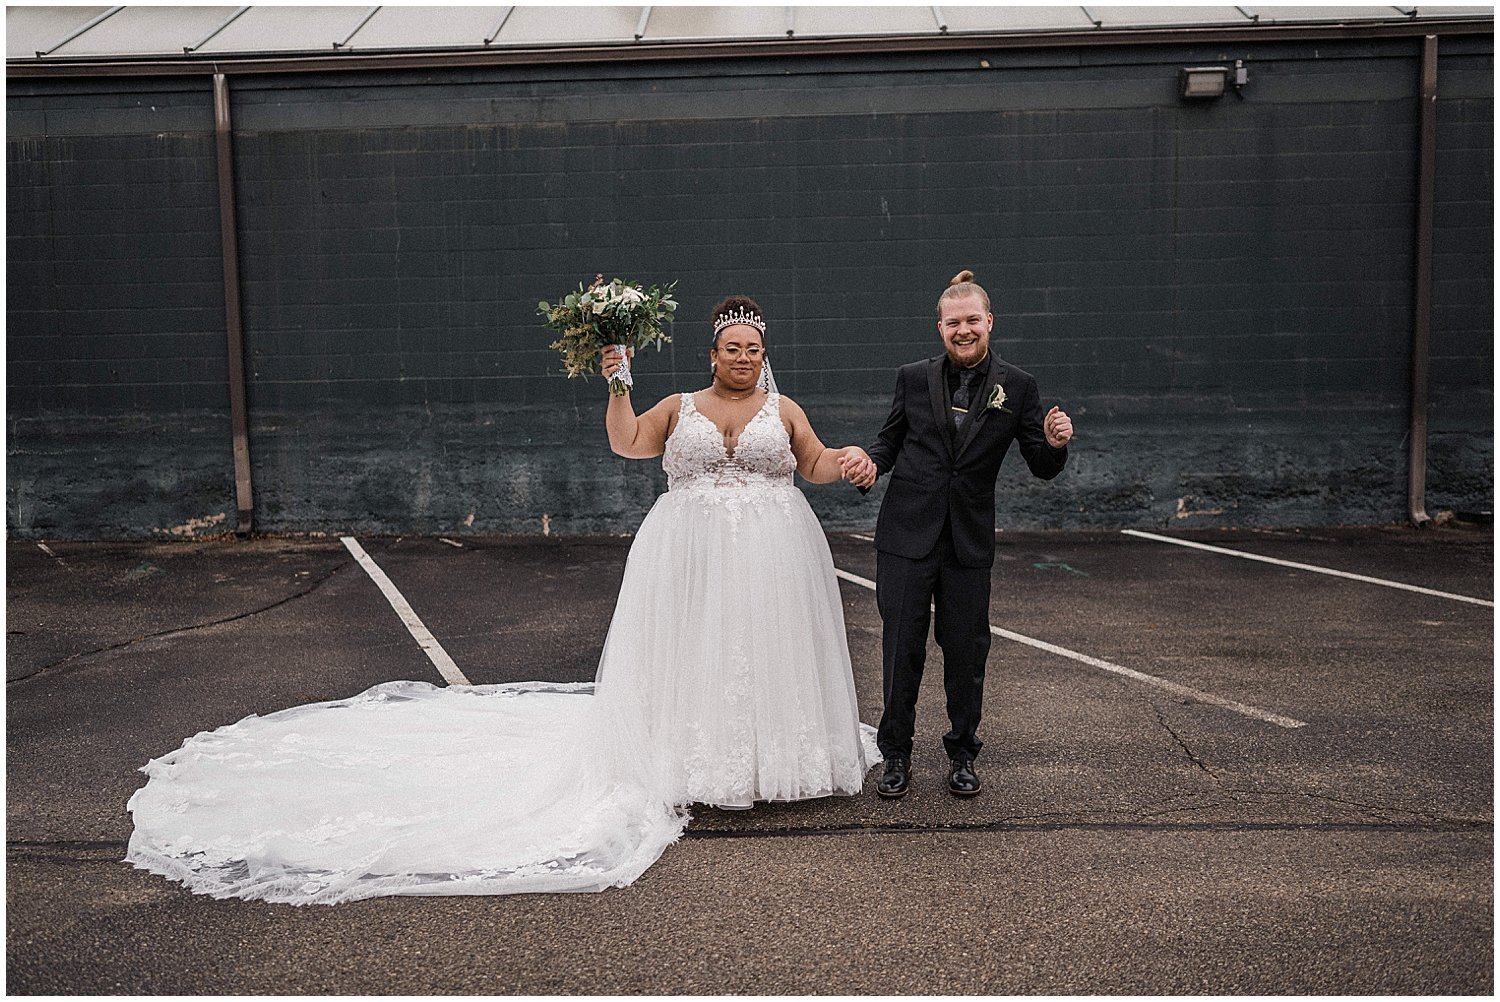 Top of the Market Wedding | Dayton, Ohio